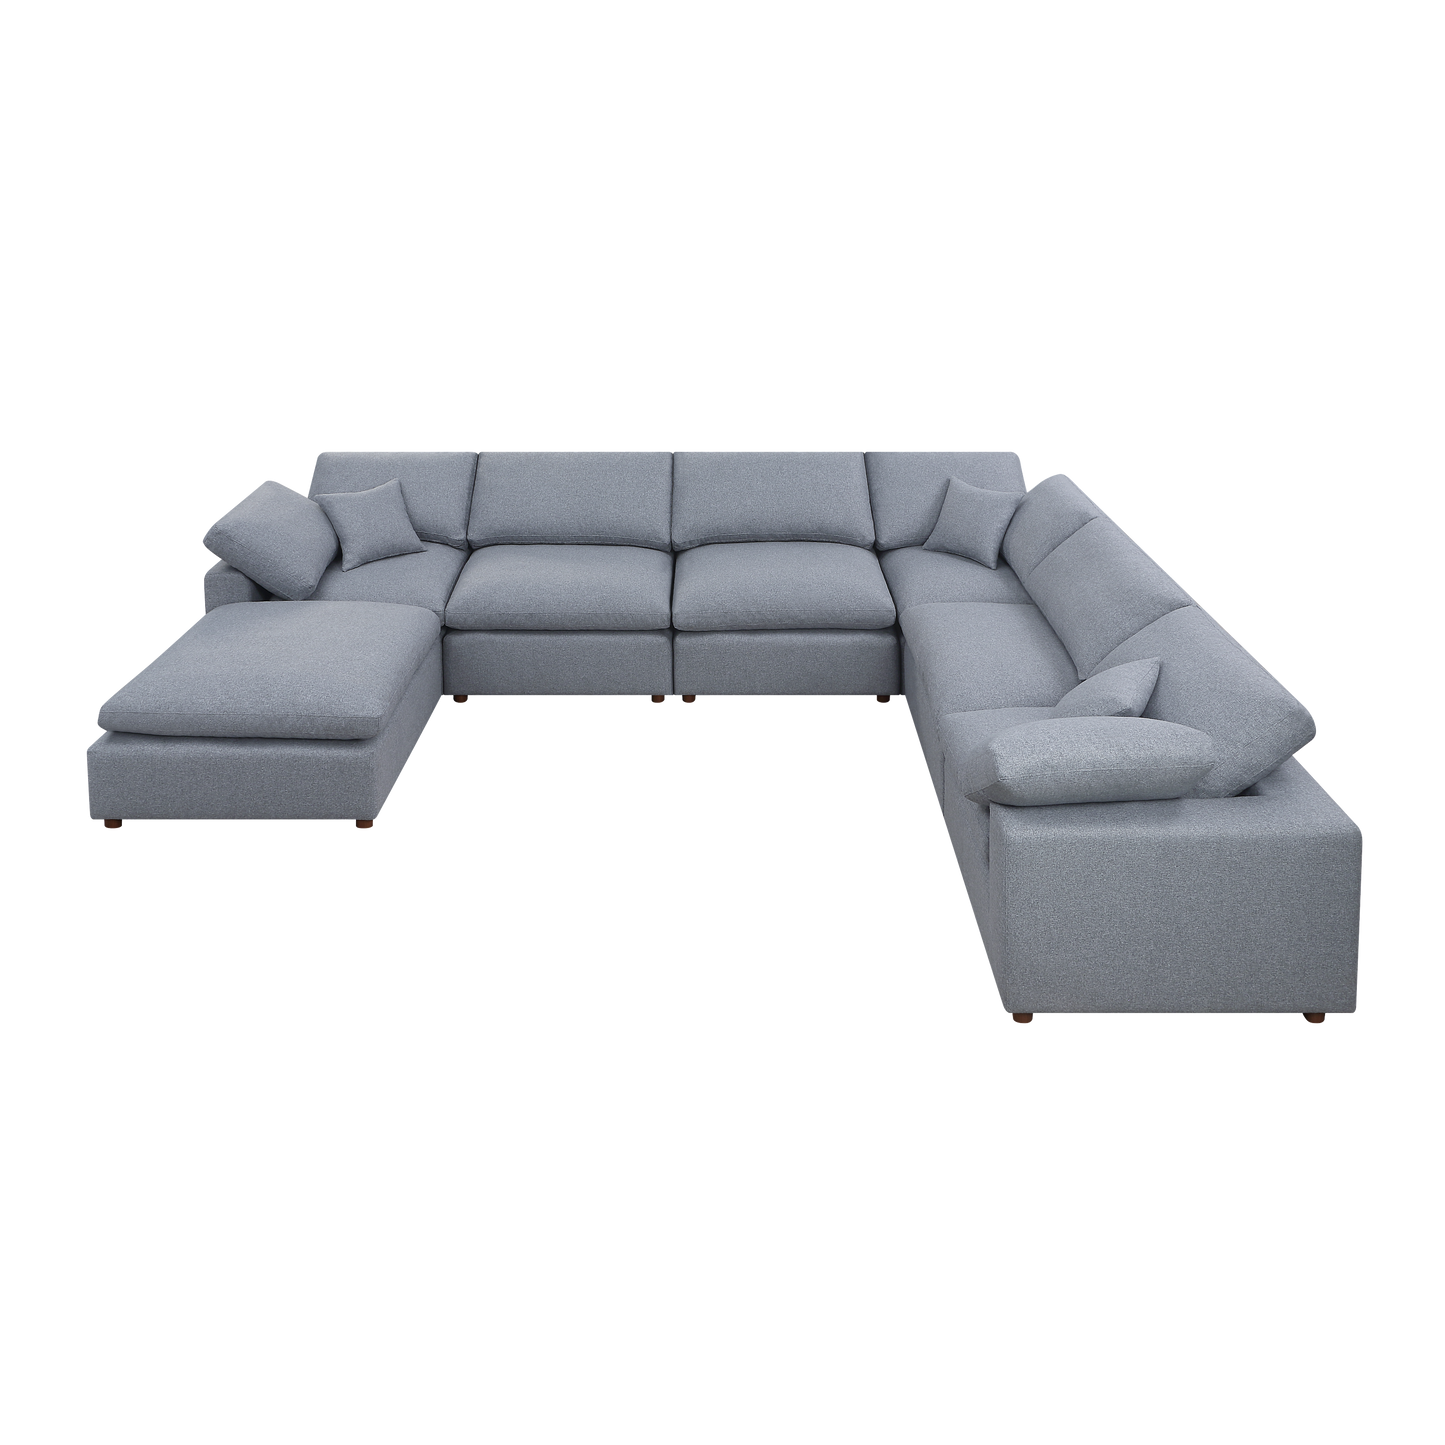 Modern Modular Sectional Sofa Set, Self-customization Design Sofa, Grey